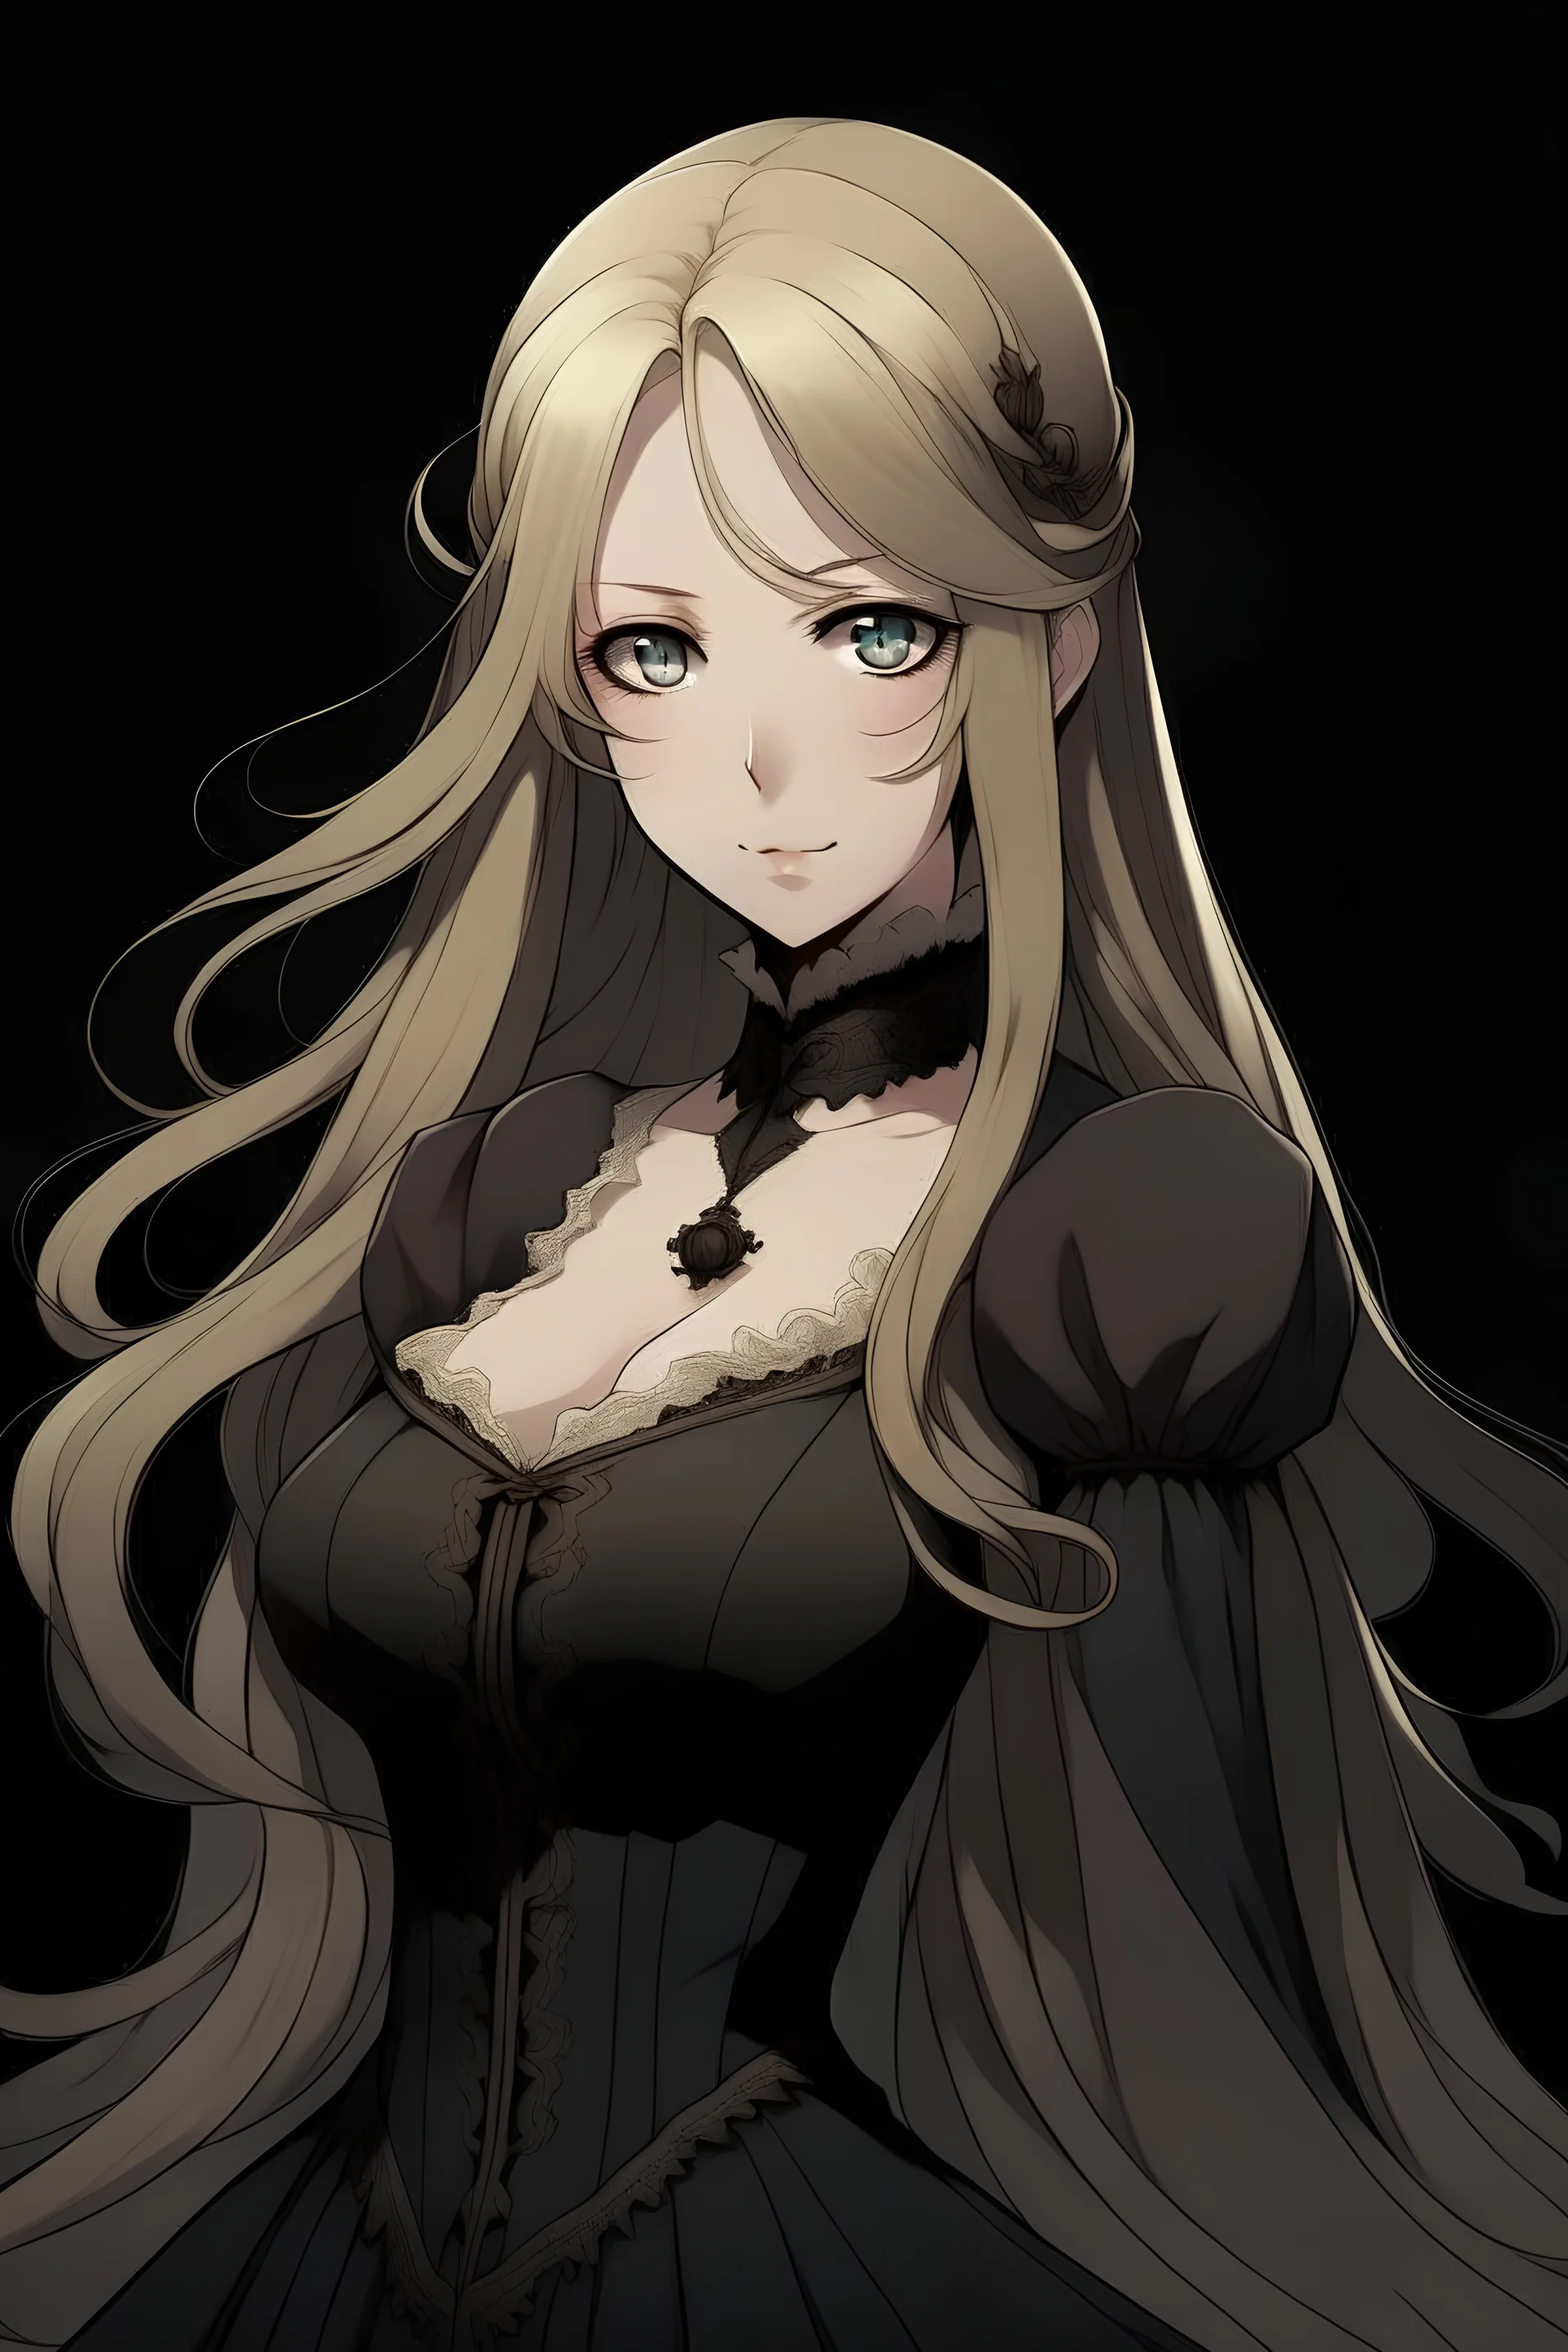 Personaje de anime femenina, con cabello rubio y largo, vestido de epoca victoriana oscuro. rostro delgado, mirada seria e imponente